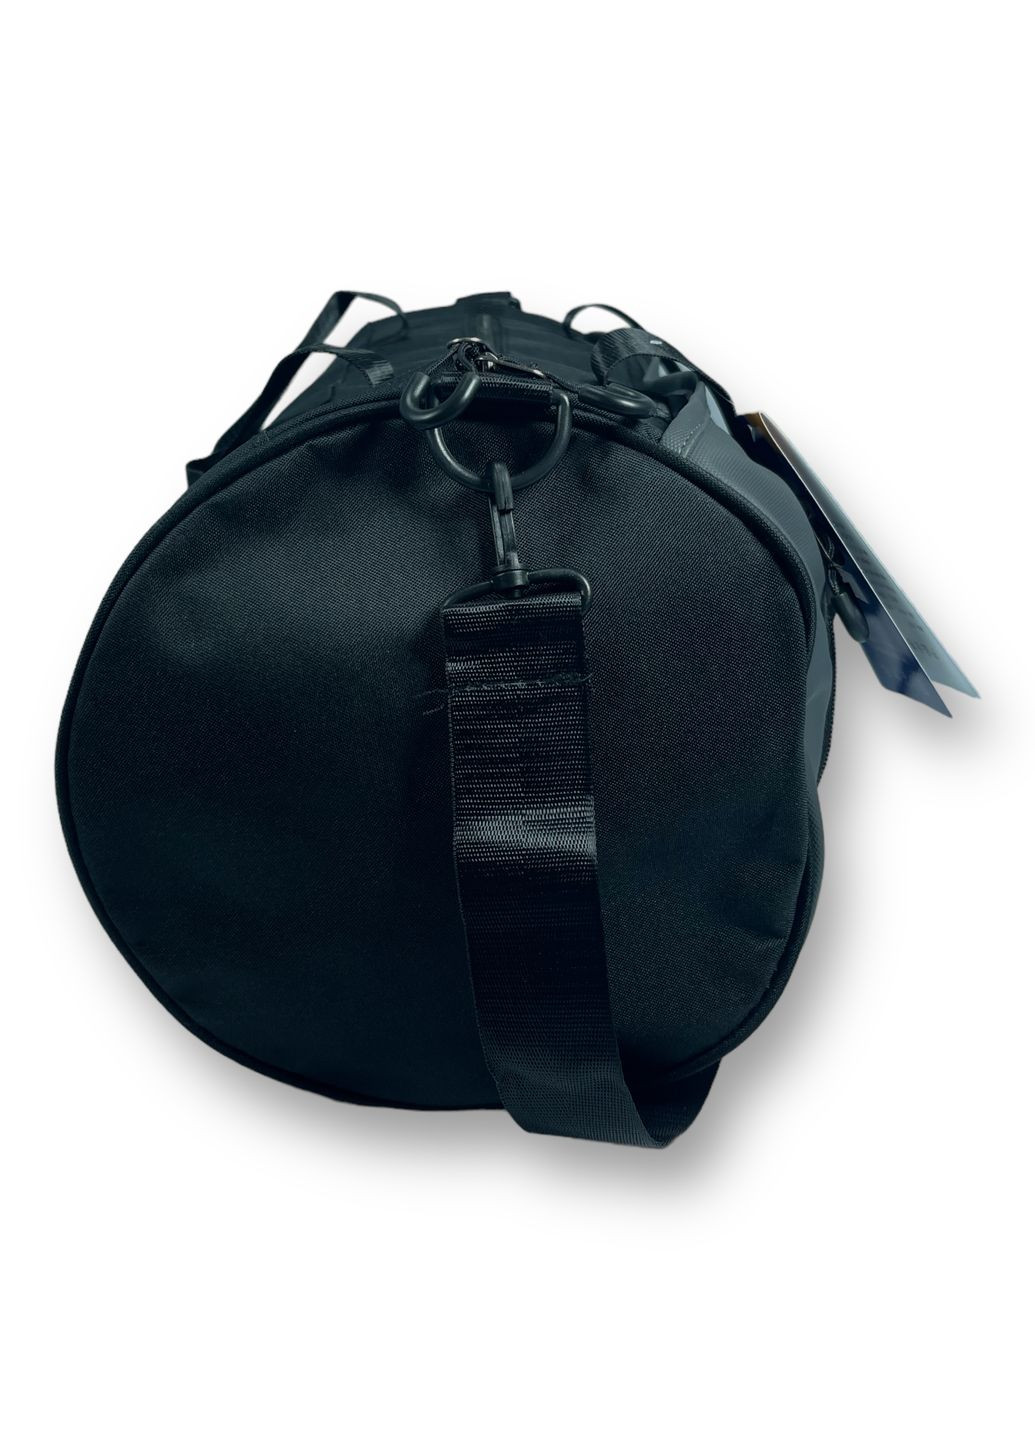 Дорожня сумка 45 л Jilipng 1 відділення 2 прихованих відділення розмір: 35*56*22 см чорна Jingpin (267495572)